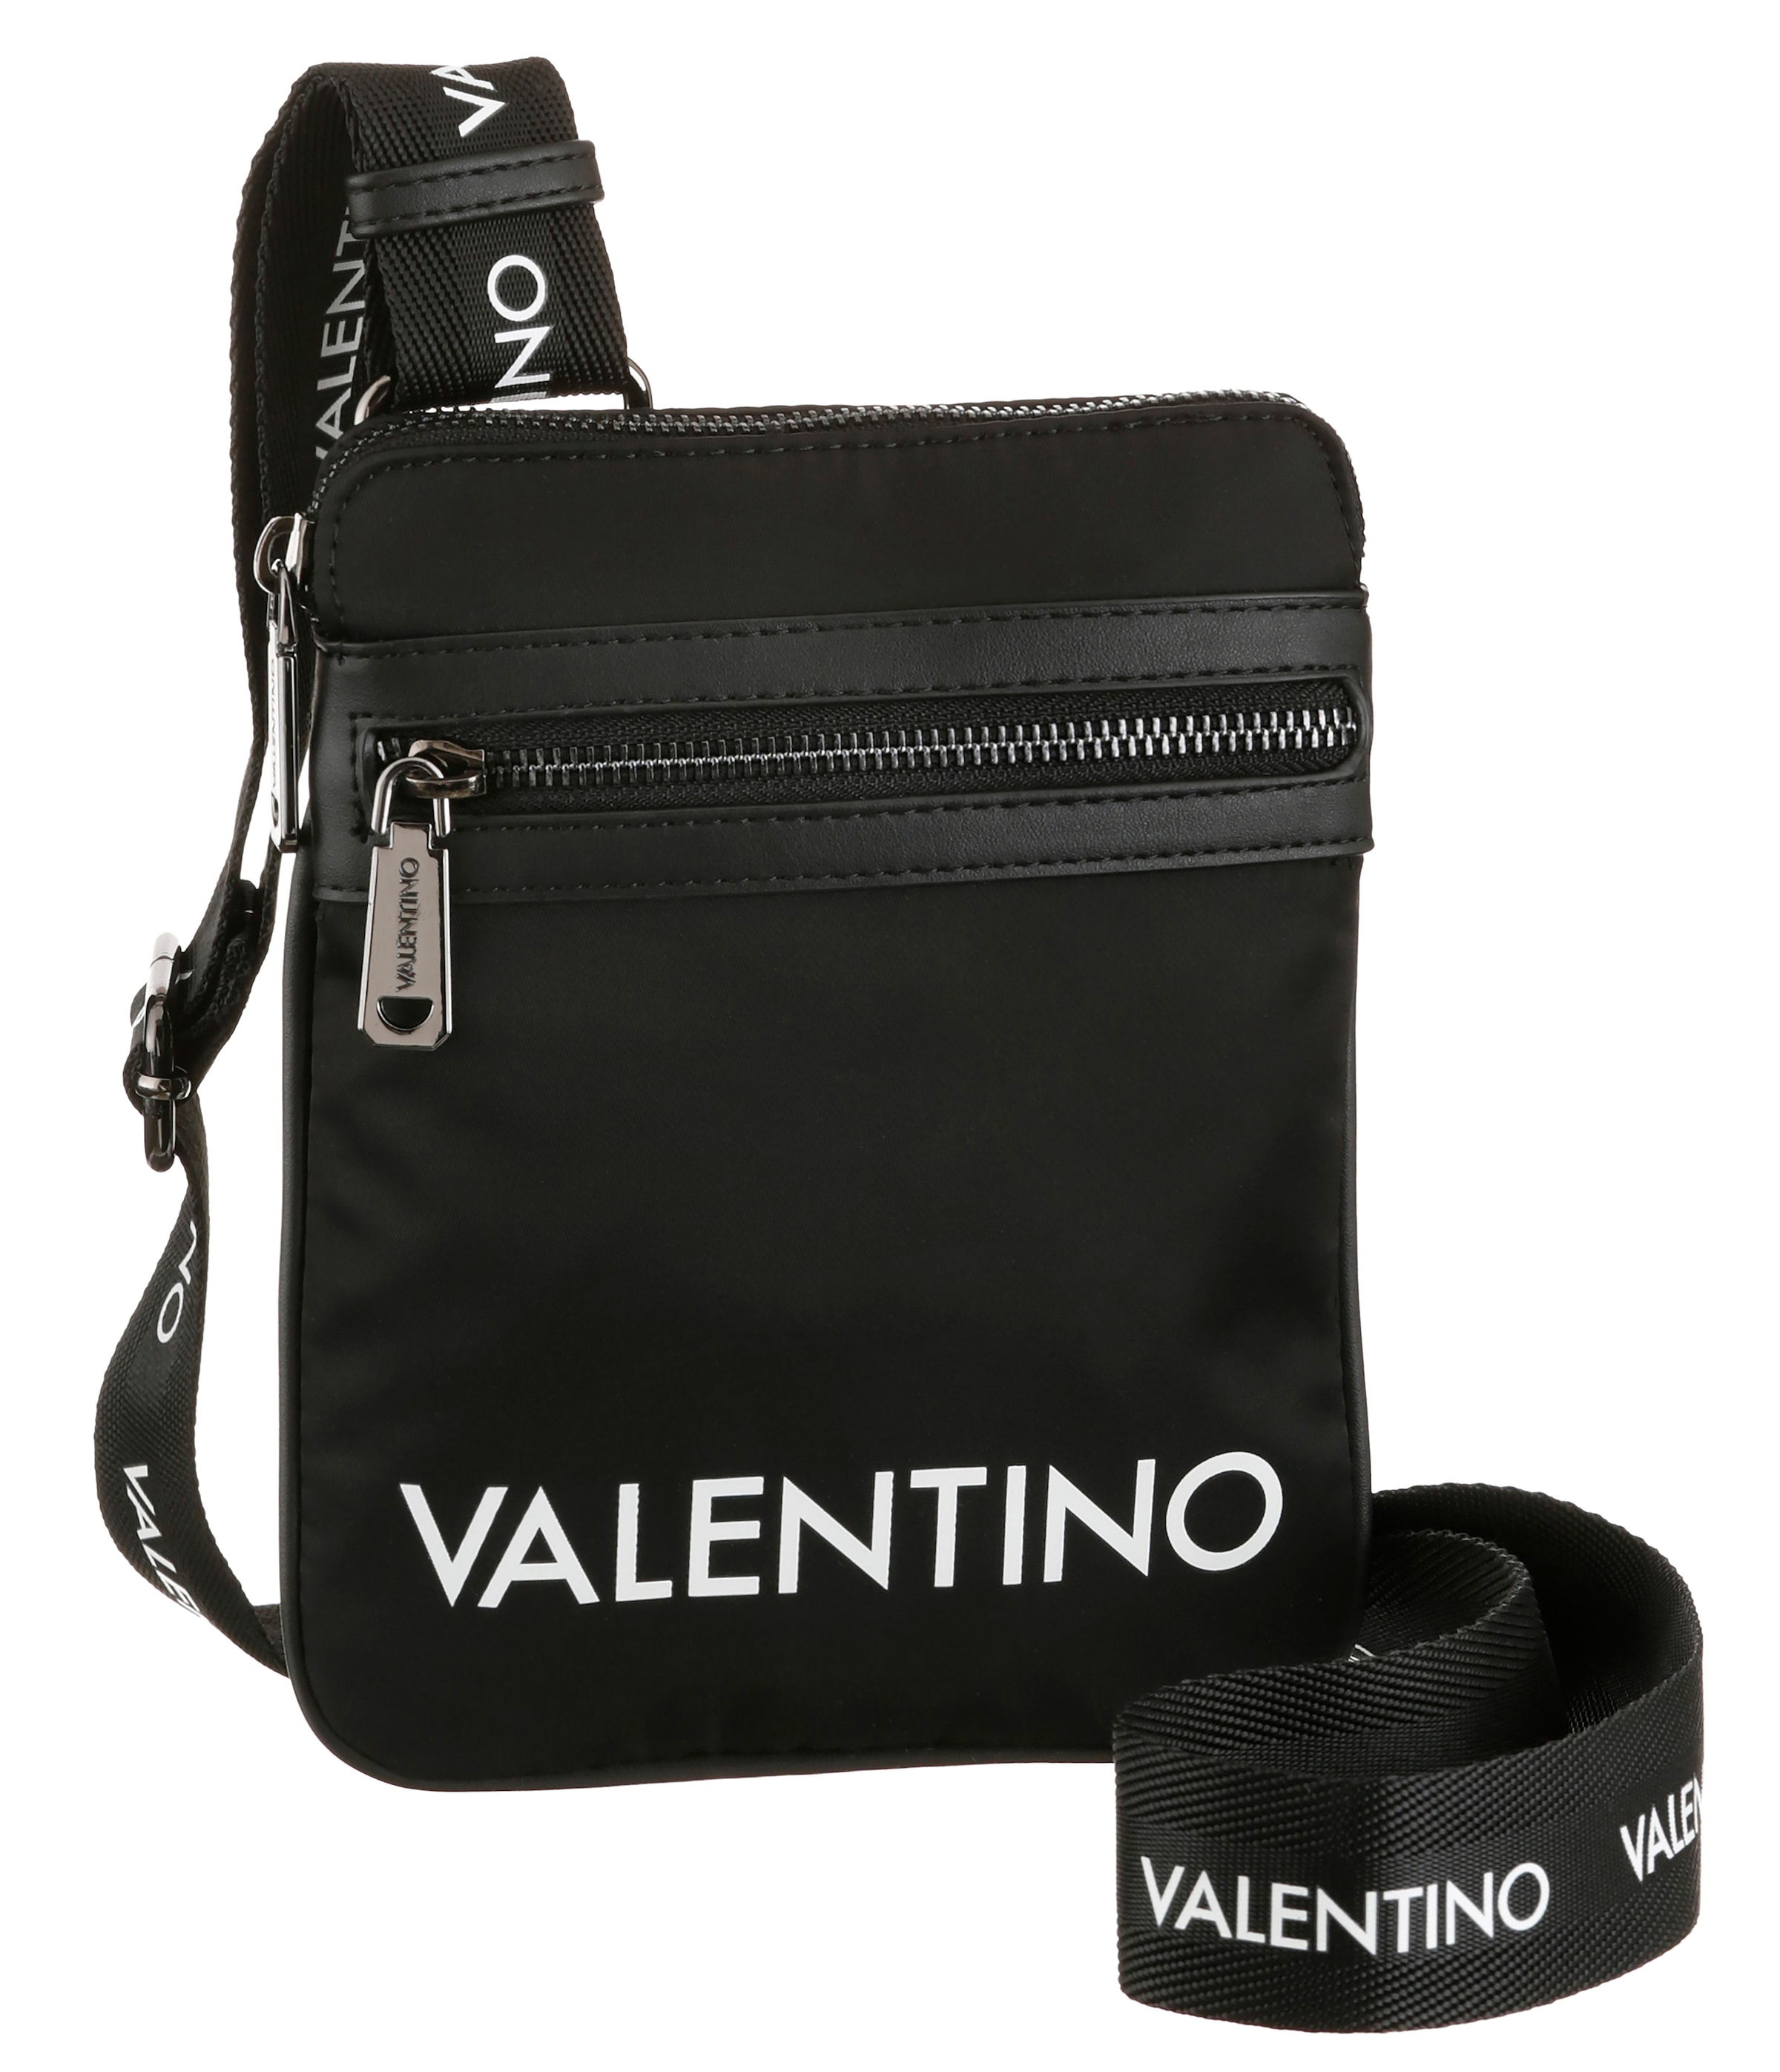 VALENTINO BAGS bestellen im Umhängetasche, online Format praktischem